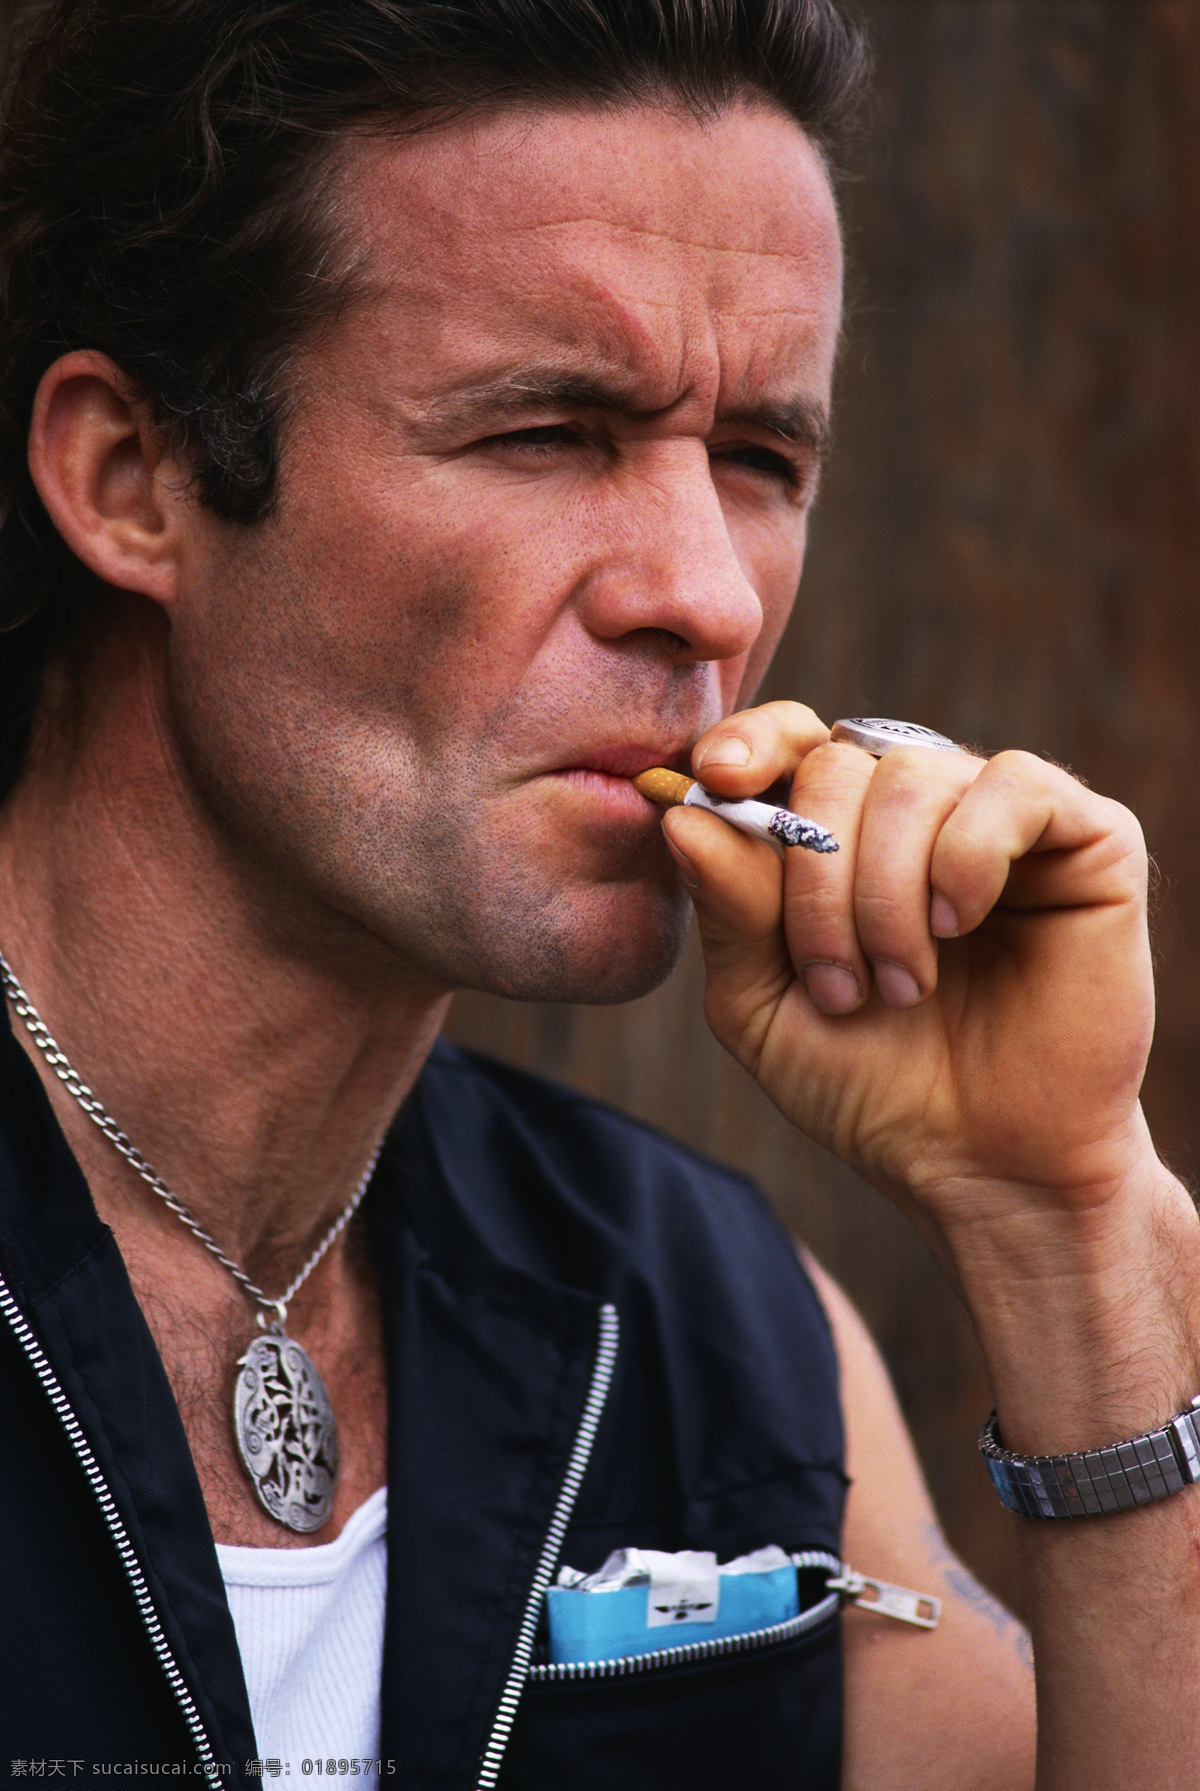 抽烟的男人 男人 抽烟 香烟 眉头深锁 皱眉 项链 人物图库 男性男人 摄影图库